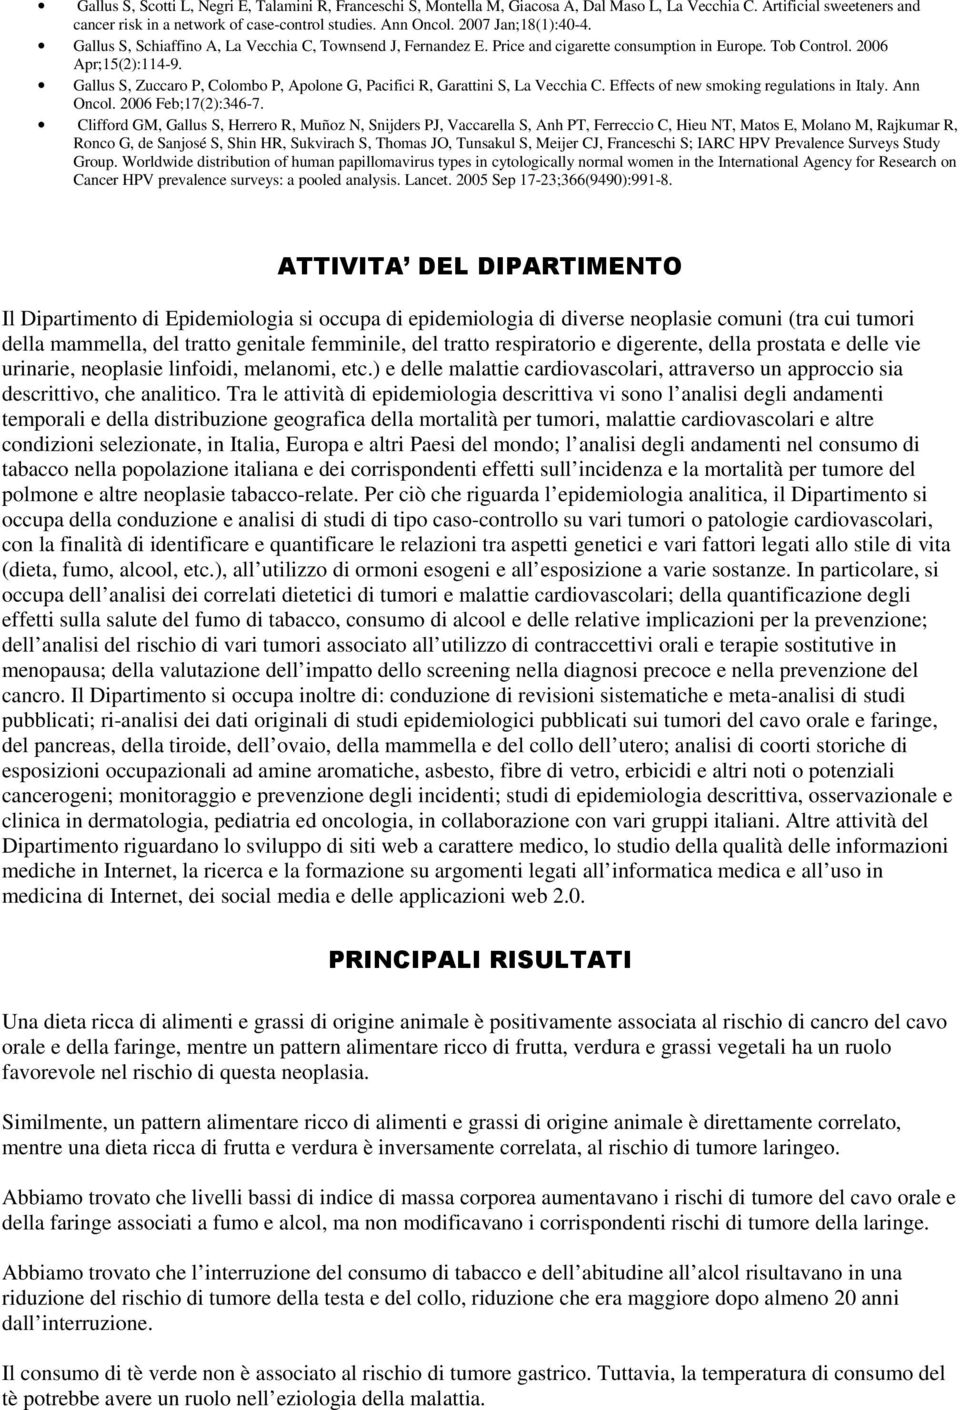 Gallus S, Zuccaro P, Colombo P, Apolone G, Pacifici R, Garattini S, La Vecchia C. Effects of new smoking regulations in Italy. Ann Oncol. 2006 Feb;17(2):346-7.